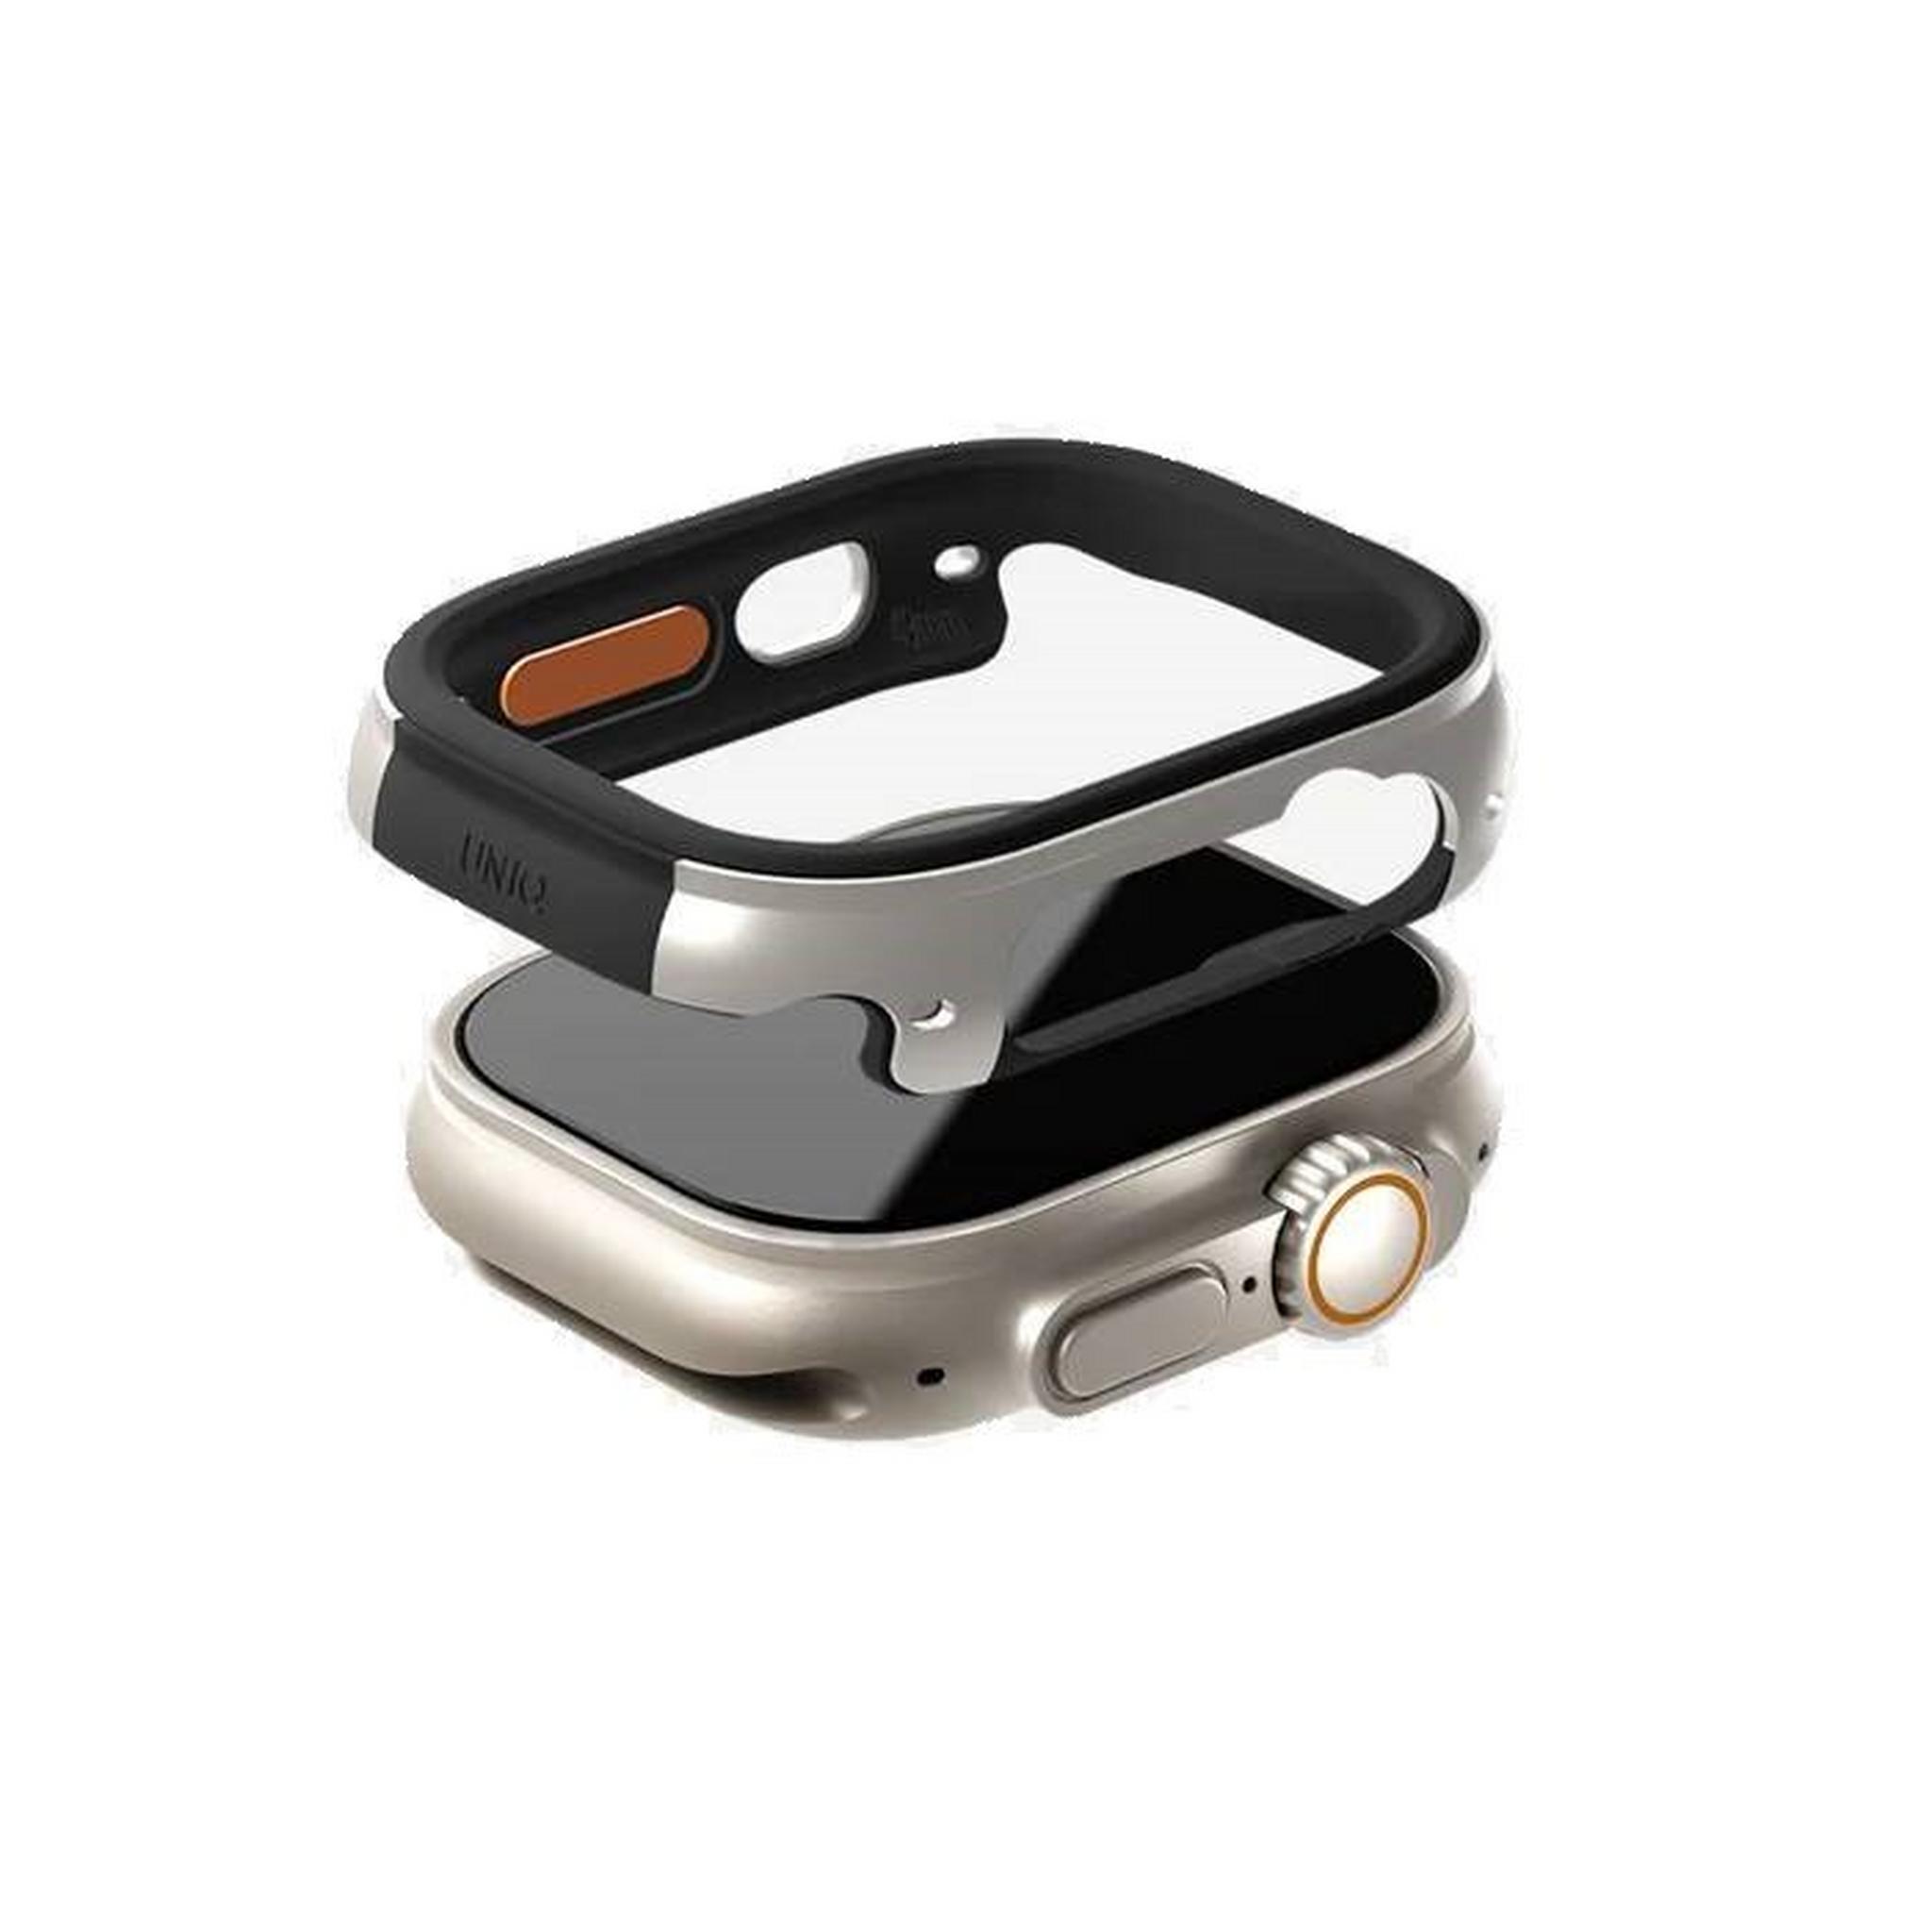 Uniq Ultra Valencia Apple Watch Case, 49mm, 8886463683965 – Silver